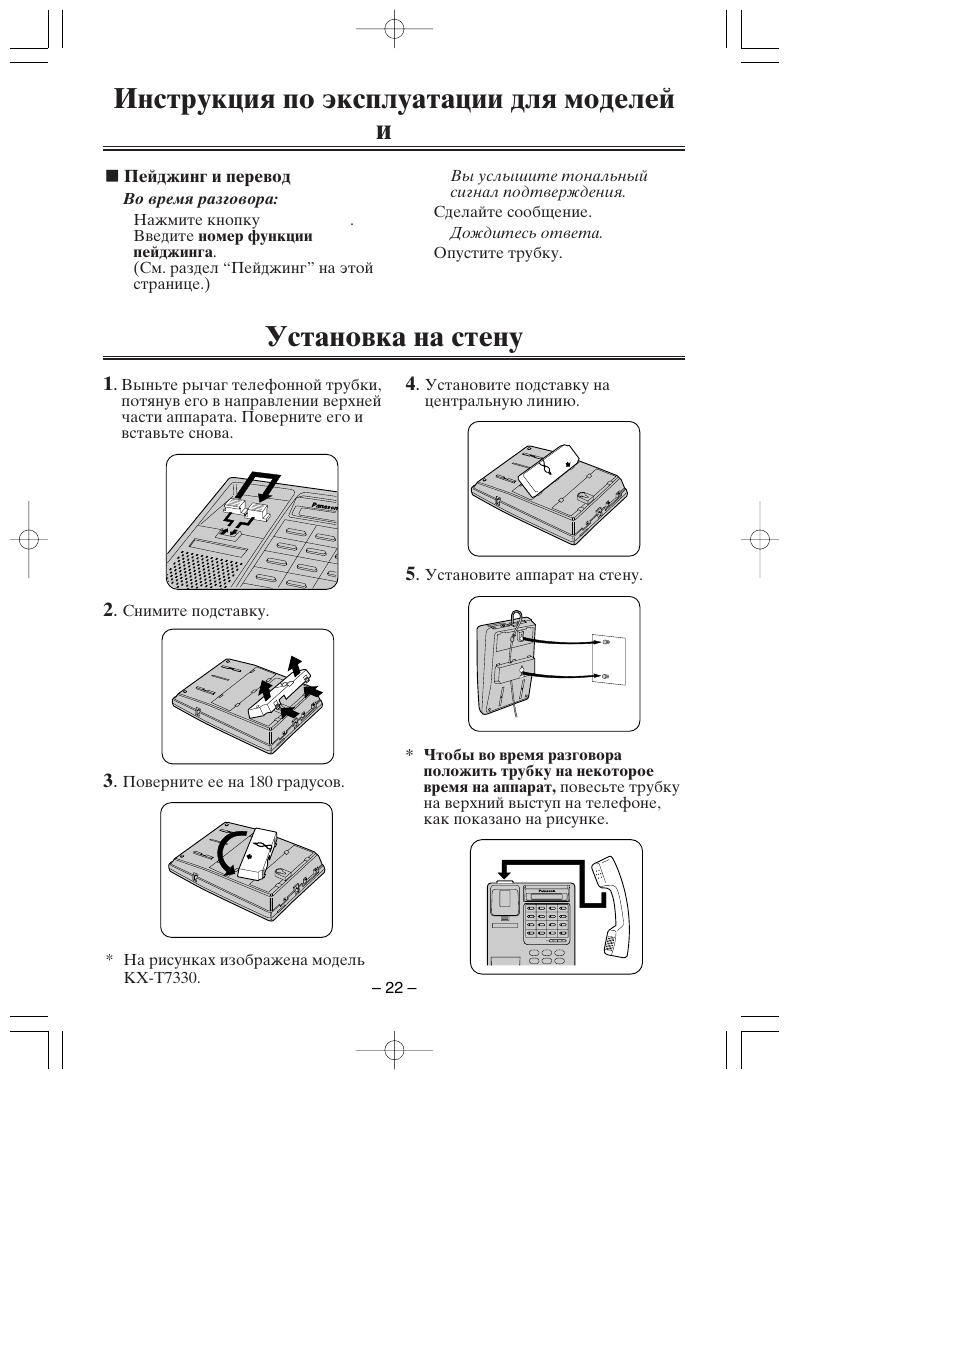 Установка на стену | Инструкция по эксплуатации Panasonic KX-T7320 | Страница 22 / 24